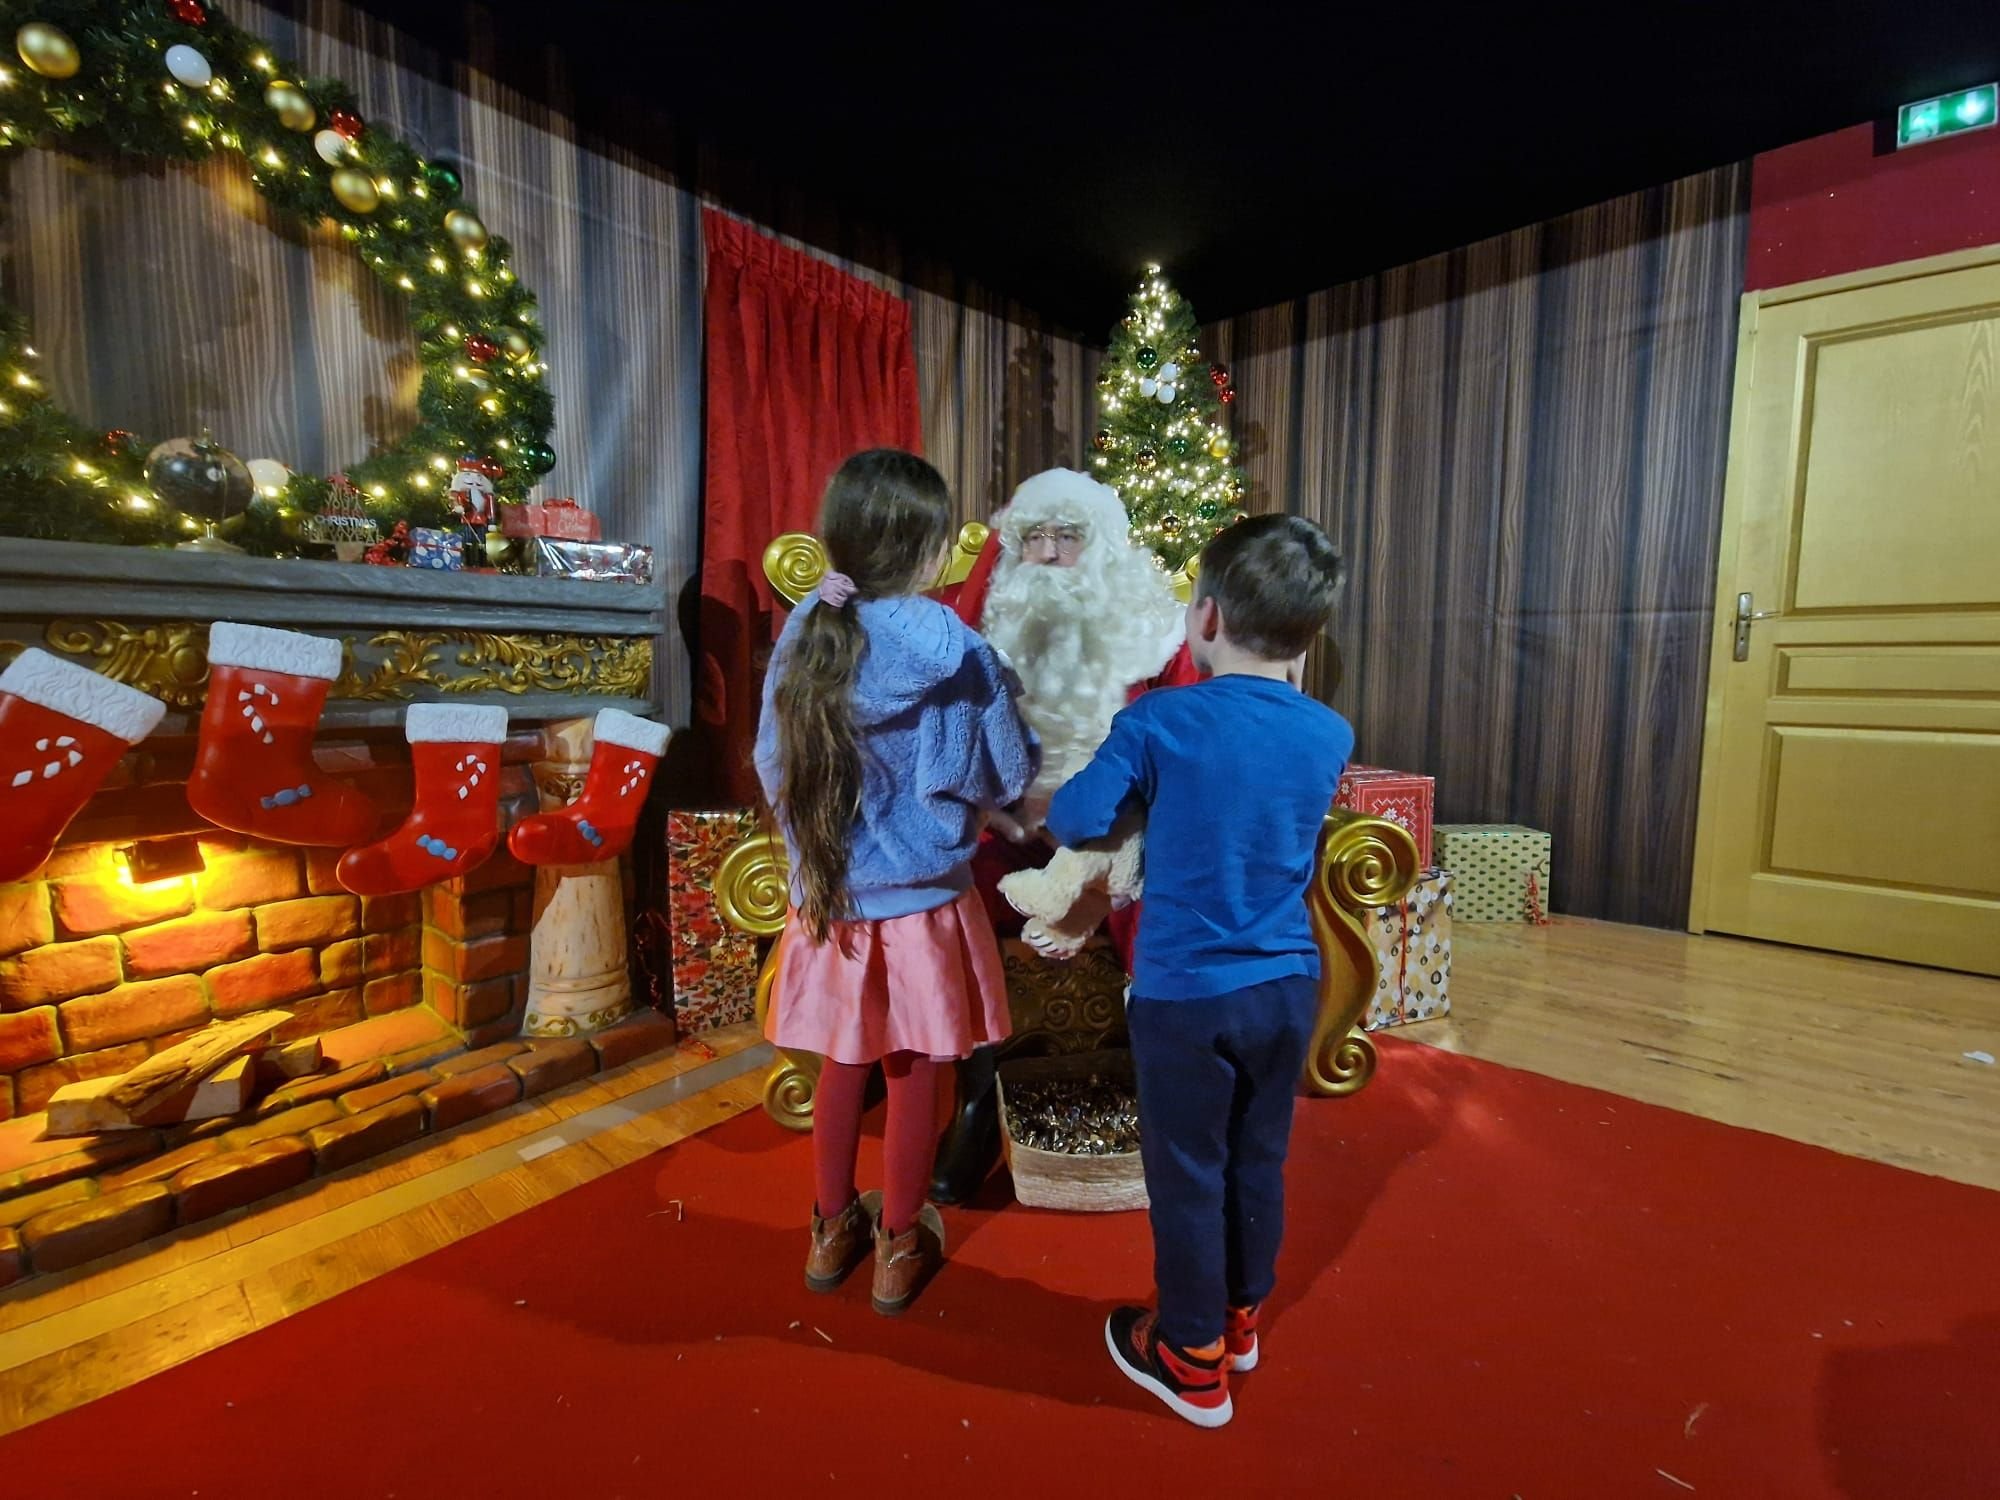 Jablines (Seine-et-Marne), samedi 16 décembre. Parmi les nouveautés de cette année, les enfants peuvent parler avec le Père Noël lors d'une rencontre privilégiée. LP/Marie Briand-Locu